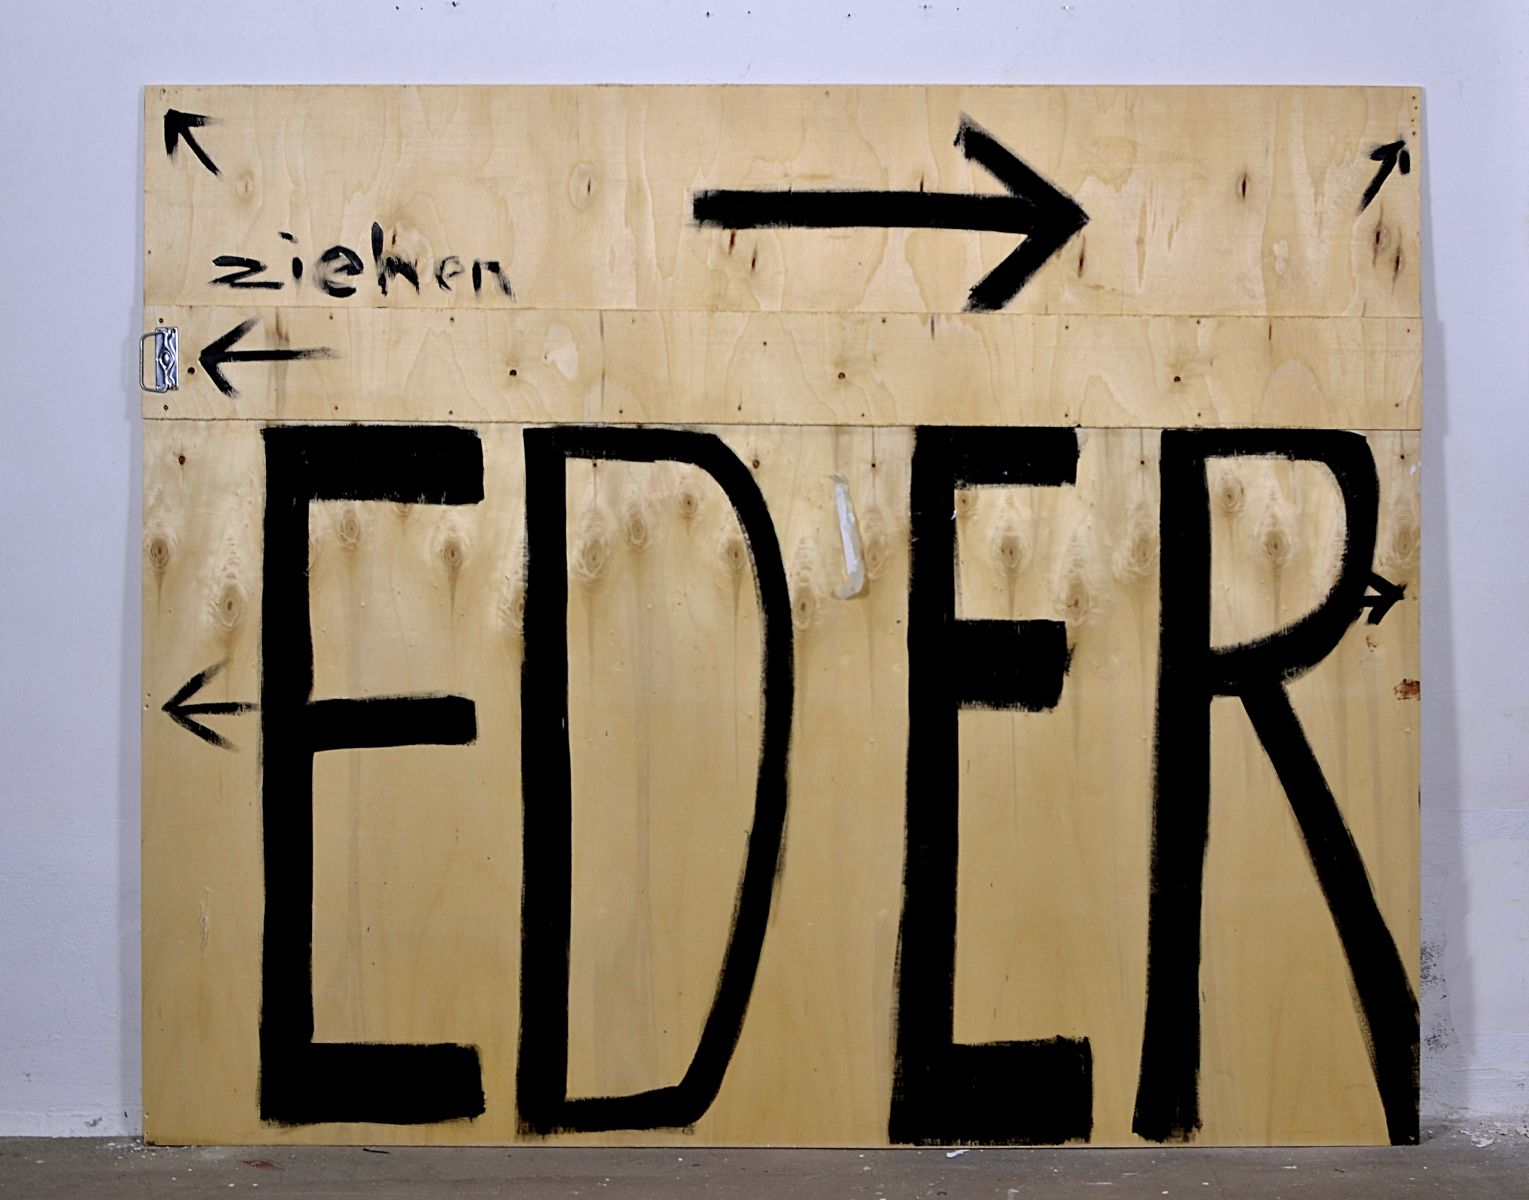 Eder-Christian Eder-art studio vienna, eder - art